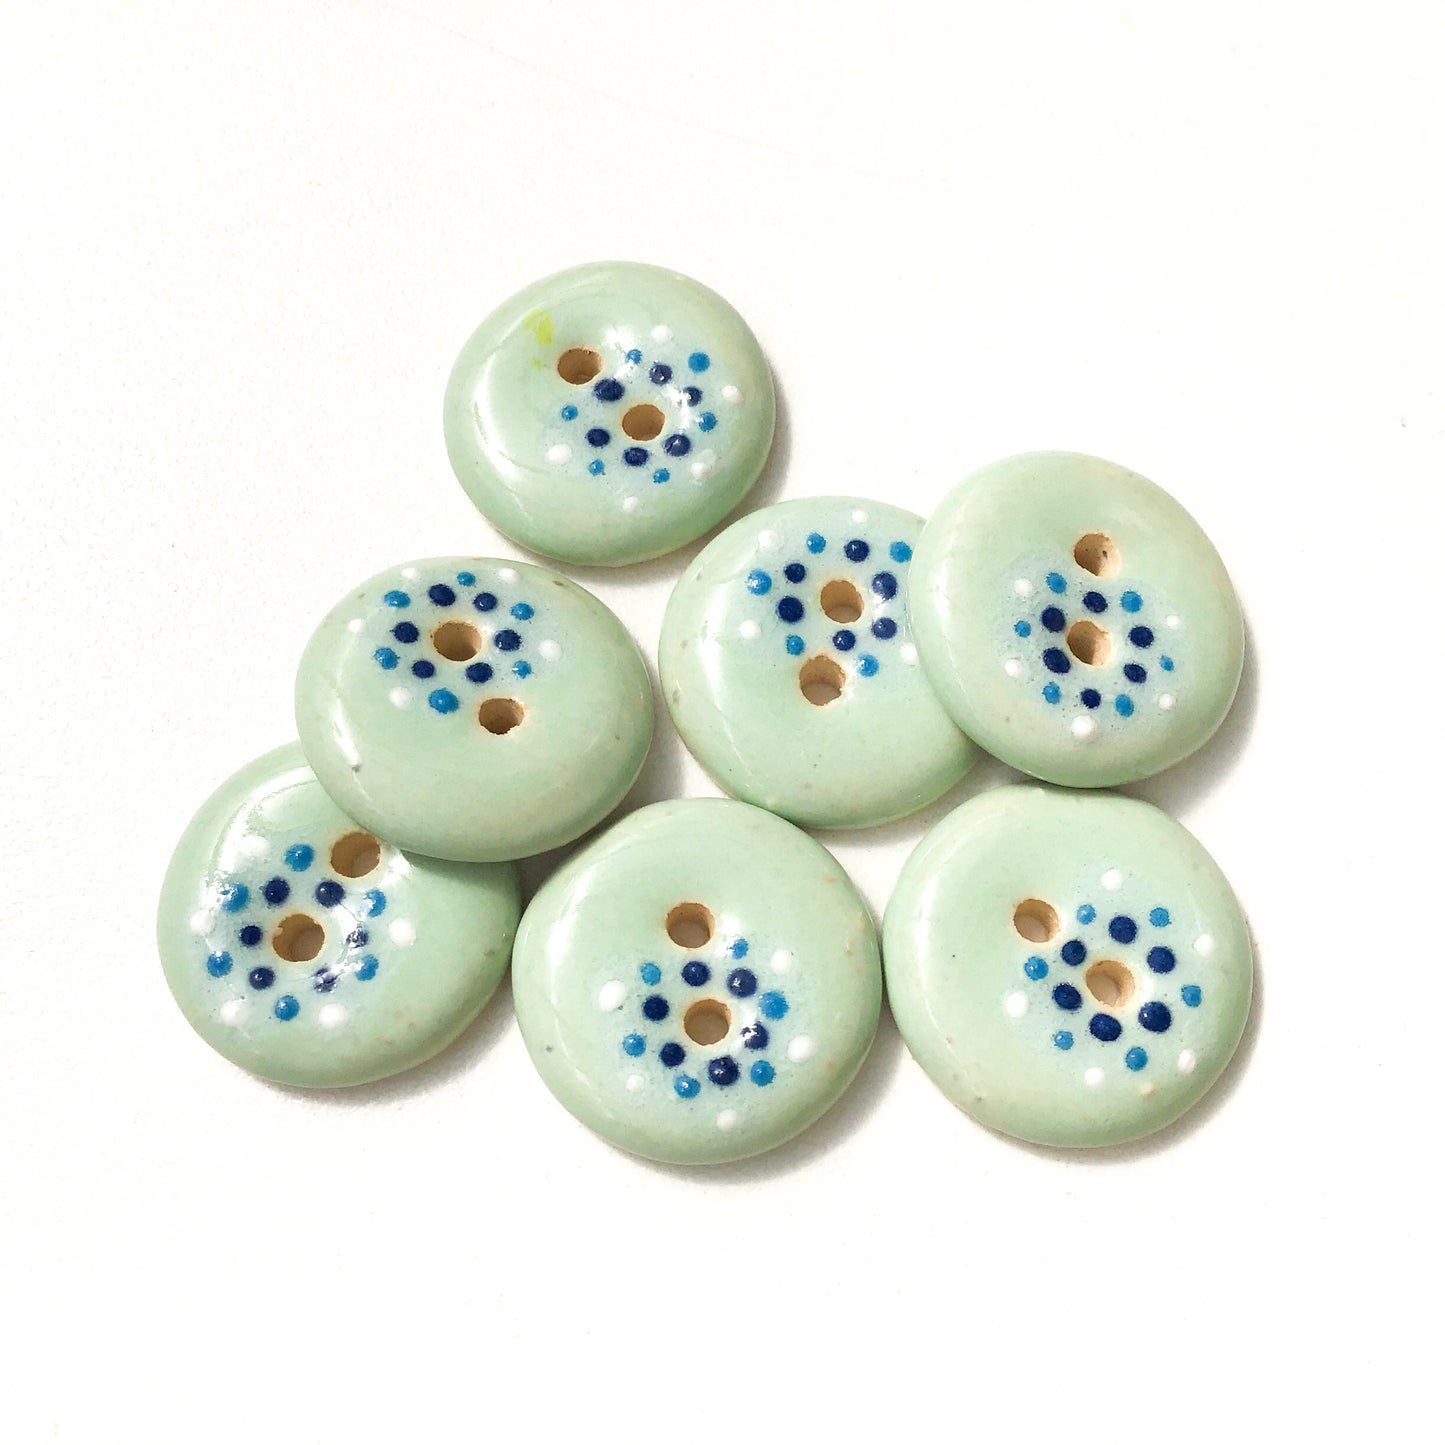 Light Aqua "Spark" Ceramic Buttons - Aqua Clay Buttons - 3/4" - 7 Pack